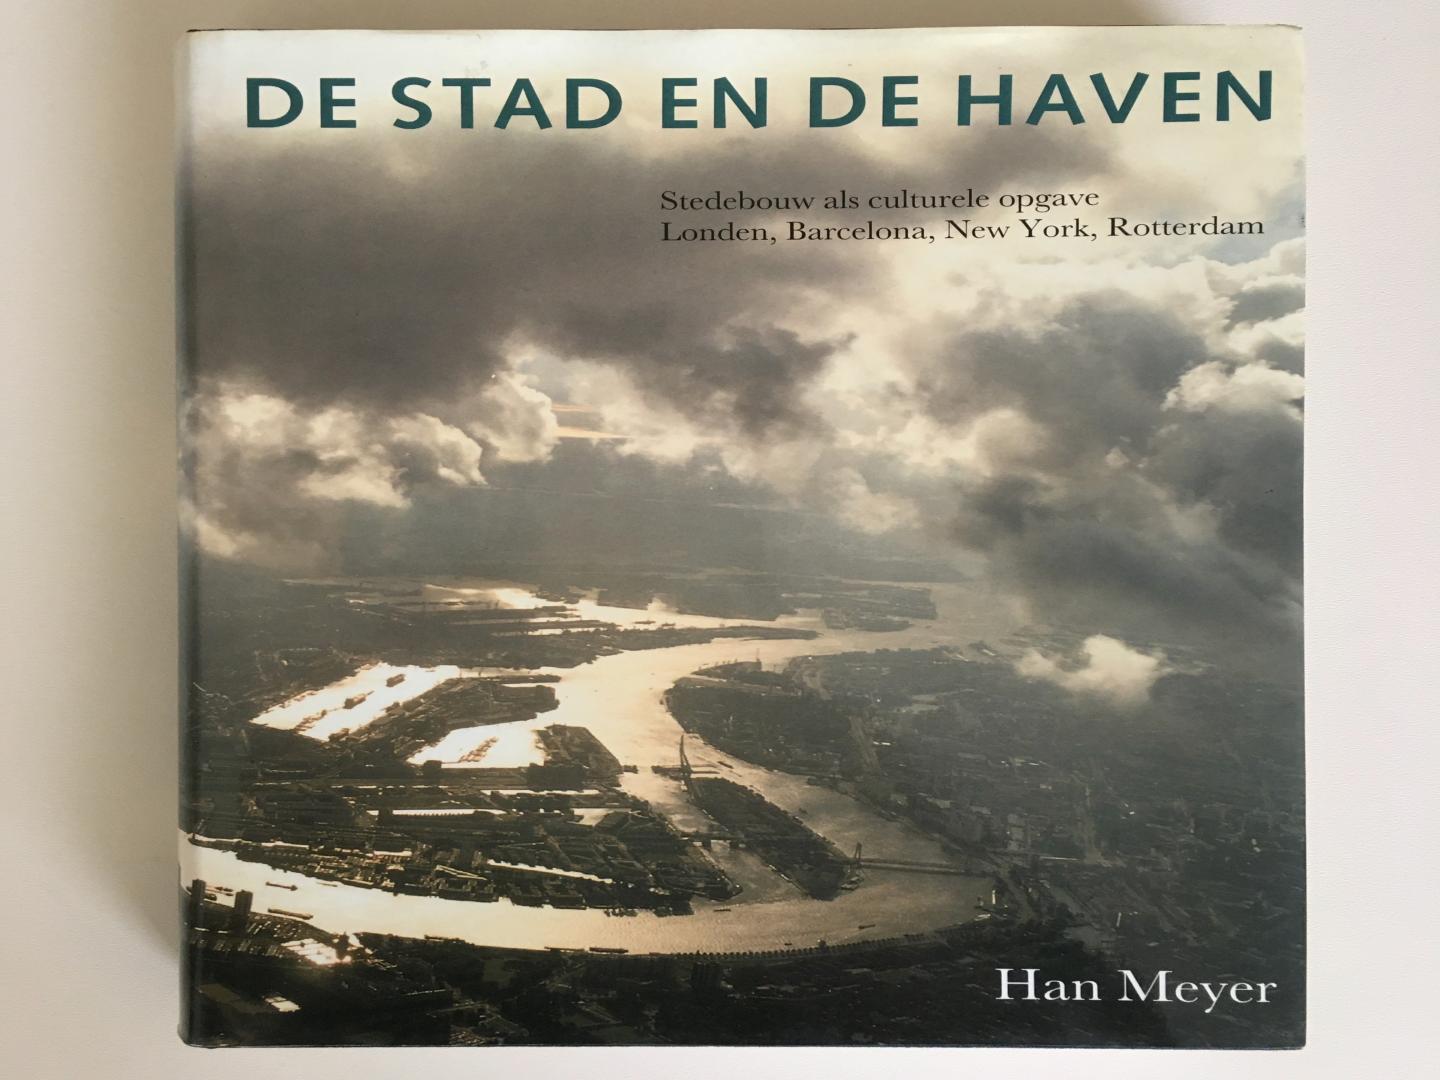 Han Meyer - De stad en de Haven - Stedebouw als culturele opgave London, Barcelona, New York Rotterdam